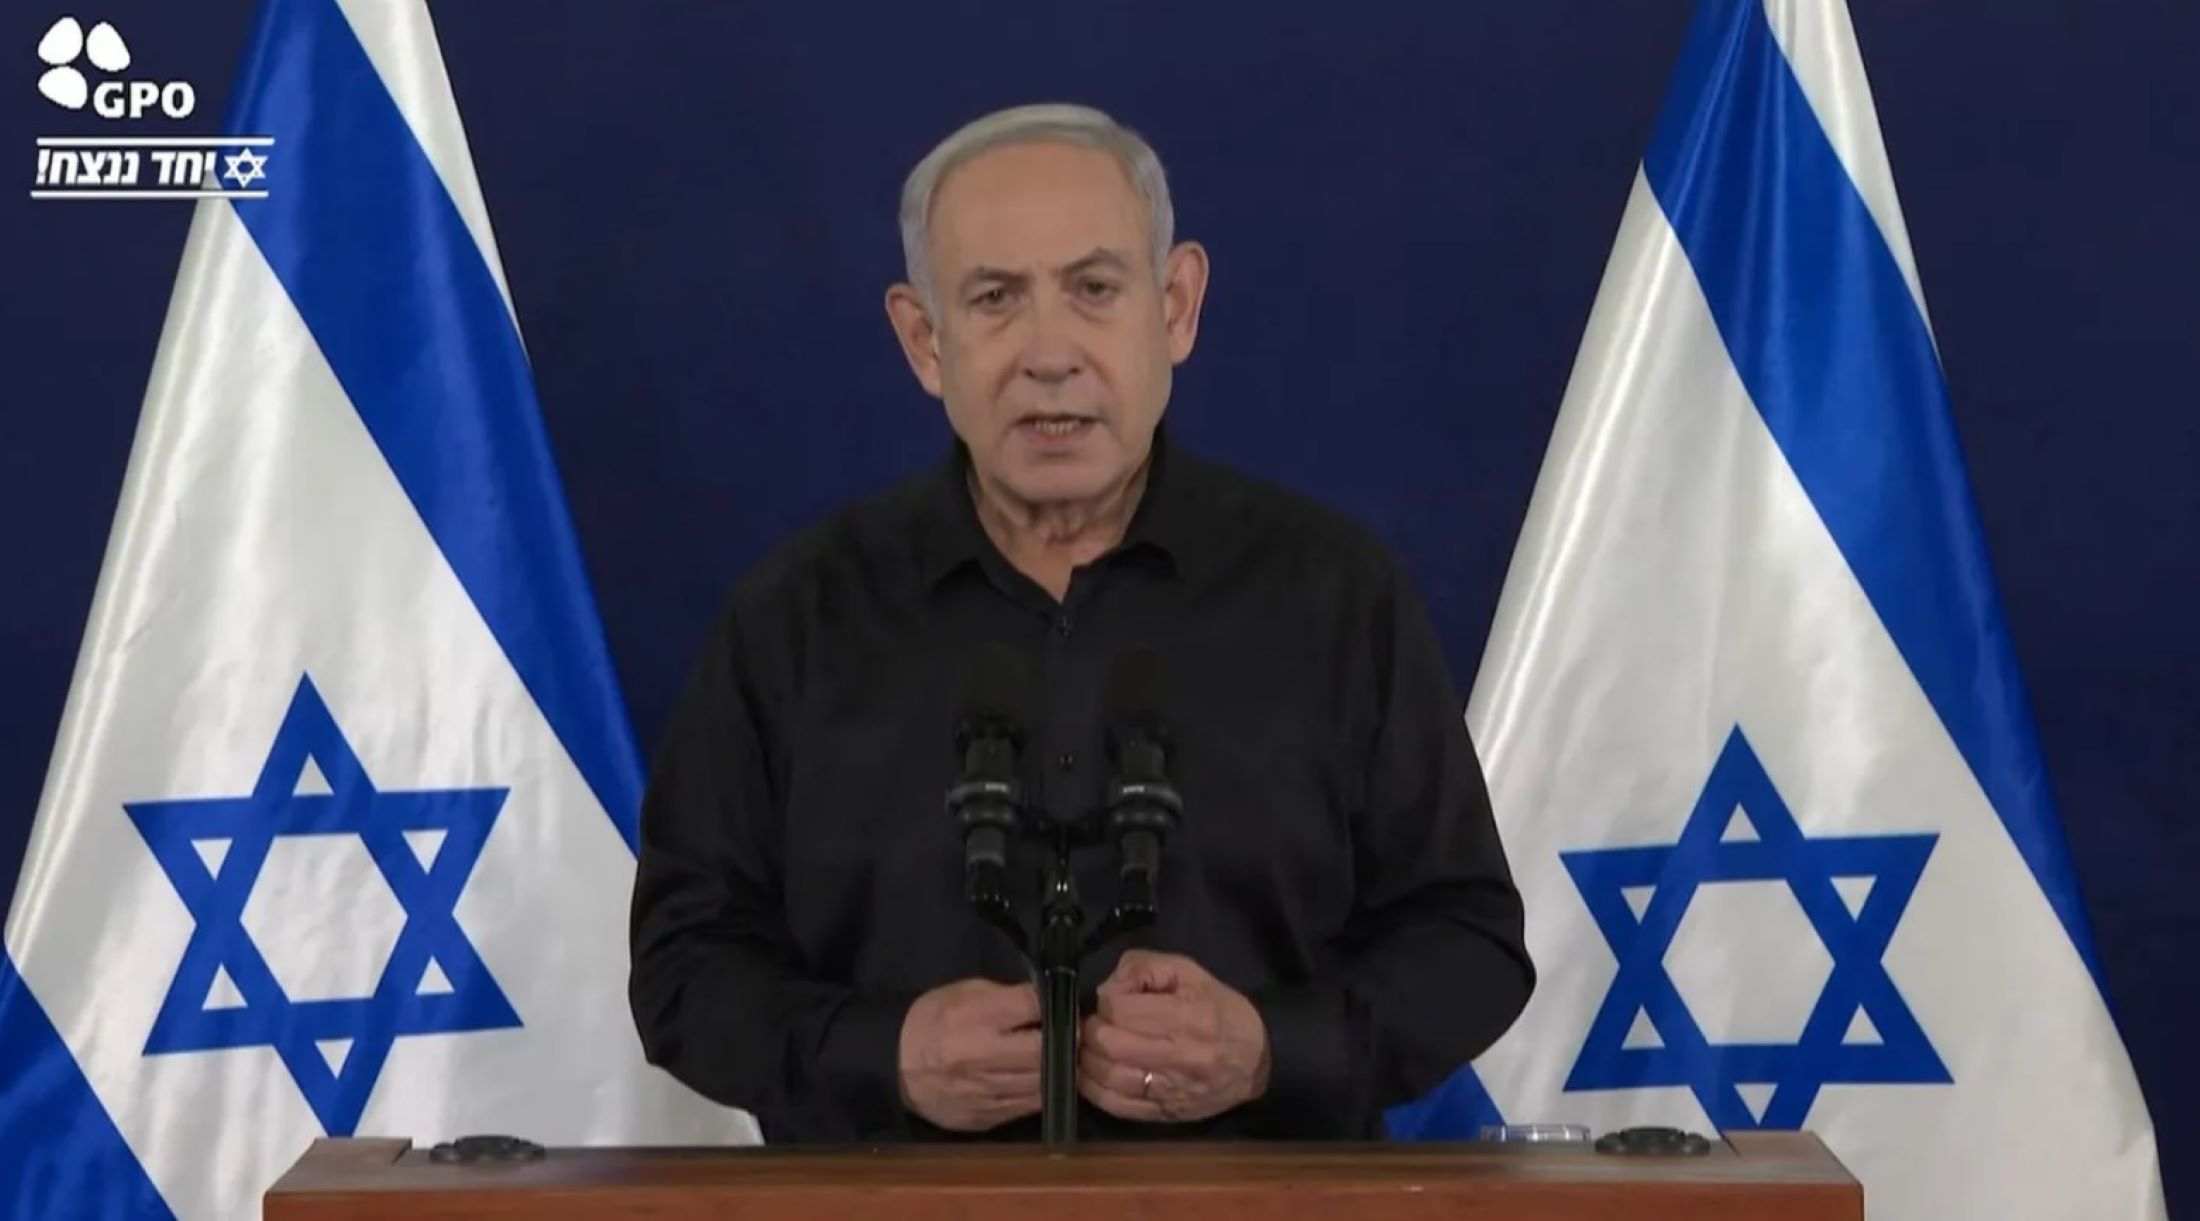 Netanyahu descarta categòricament un alto el foc a Gaza: "Seria rendir-se a la barbàrie"